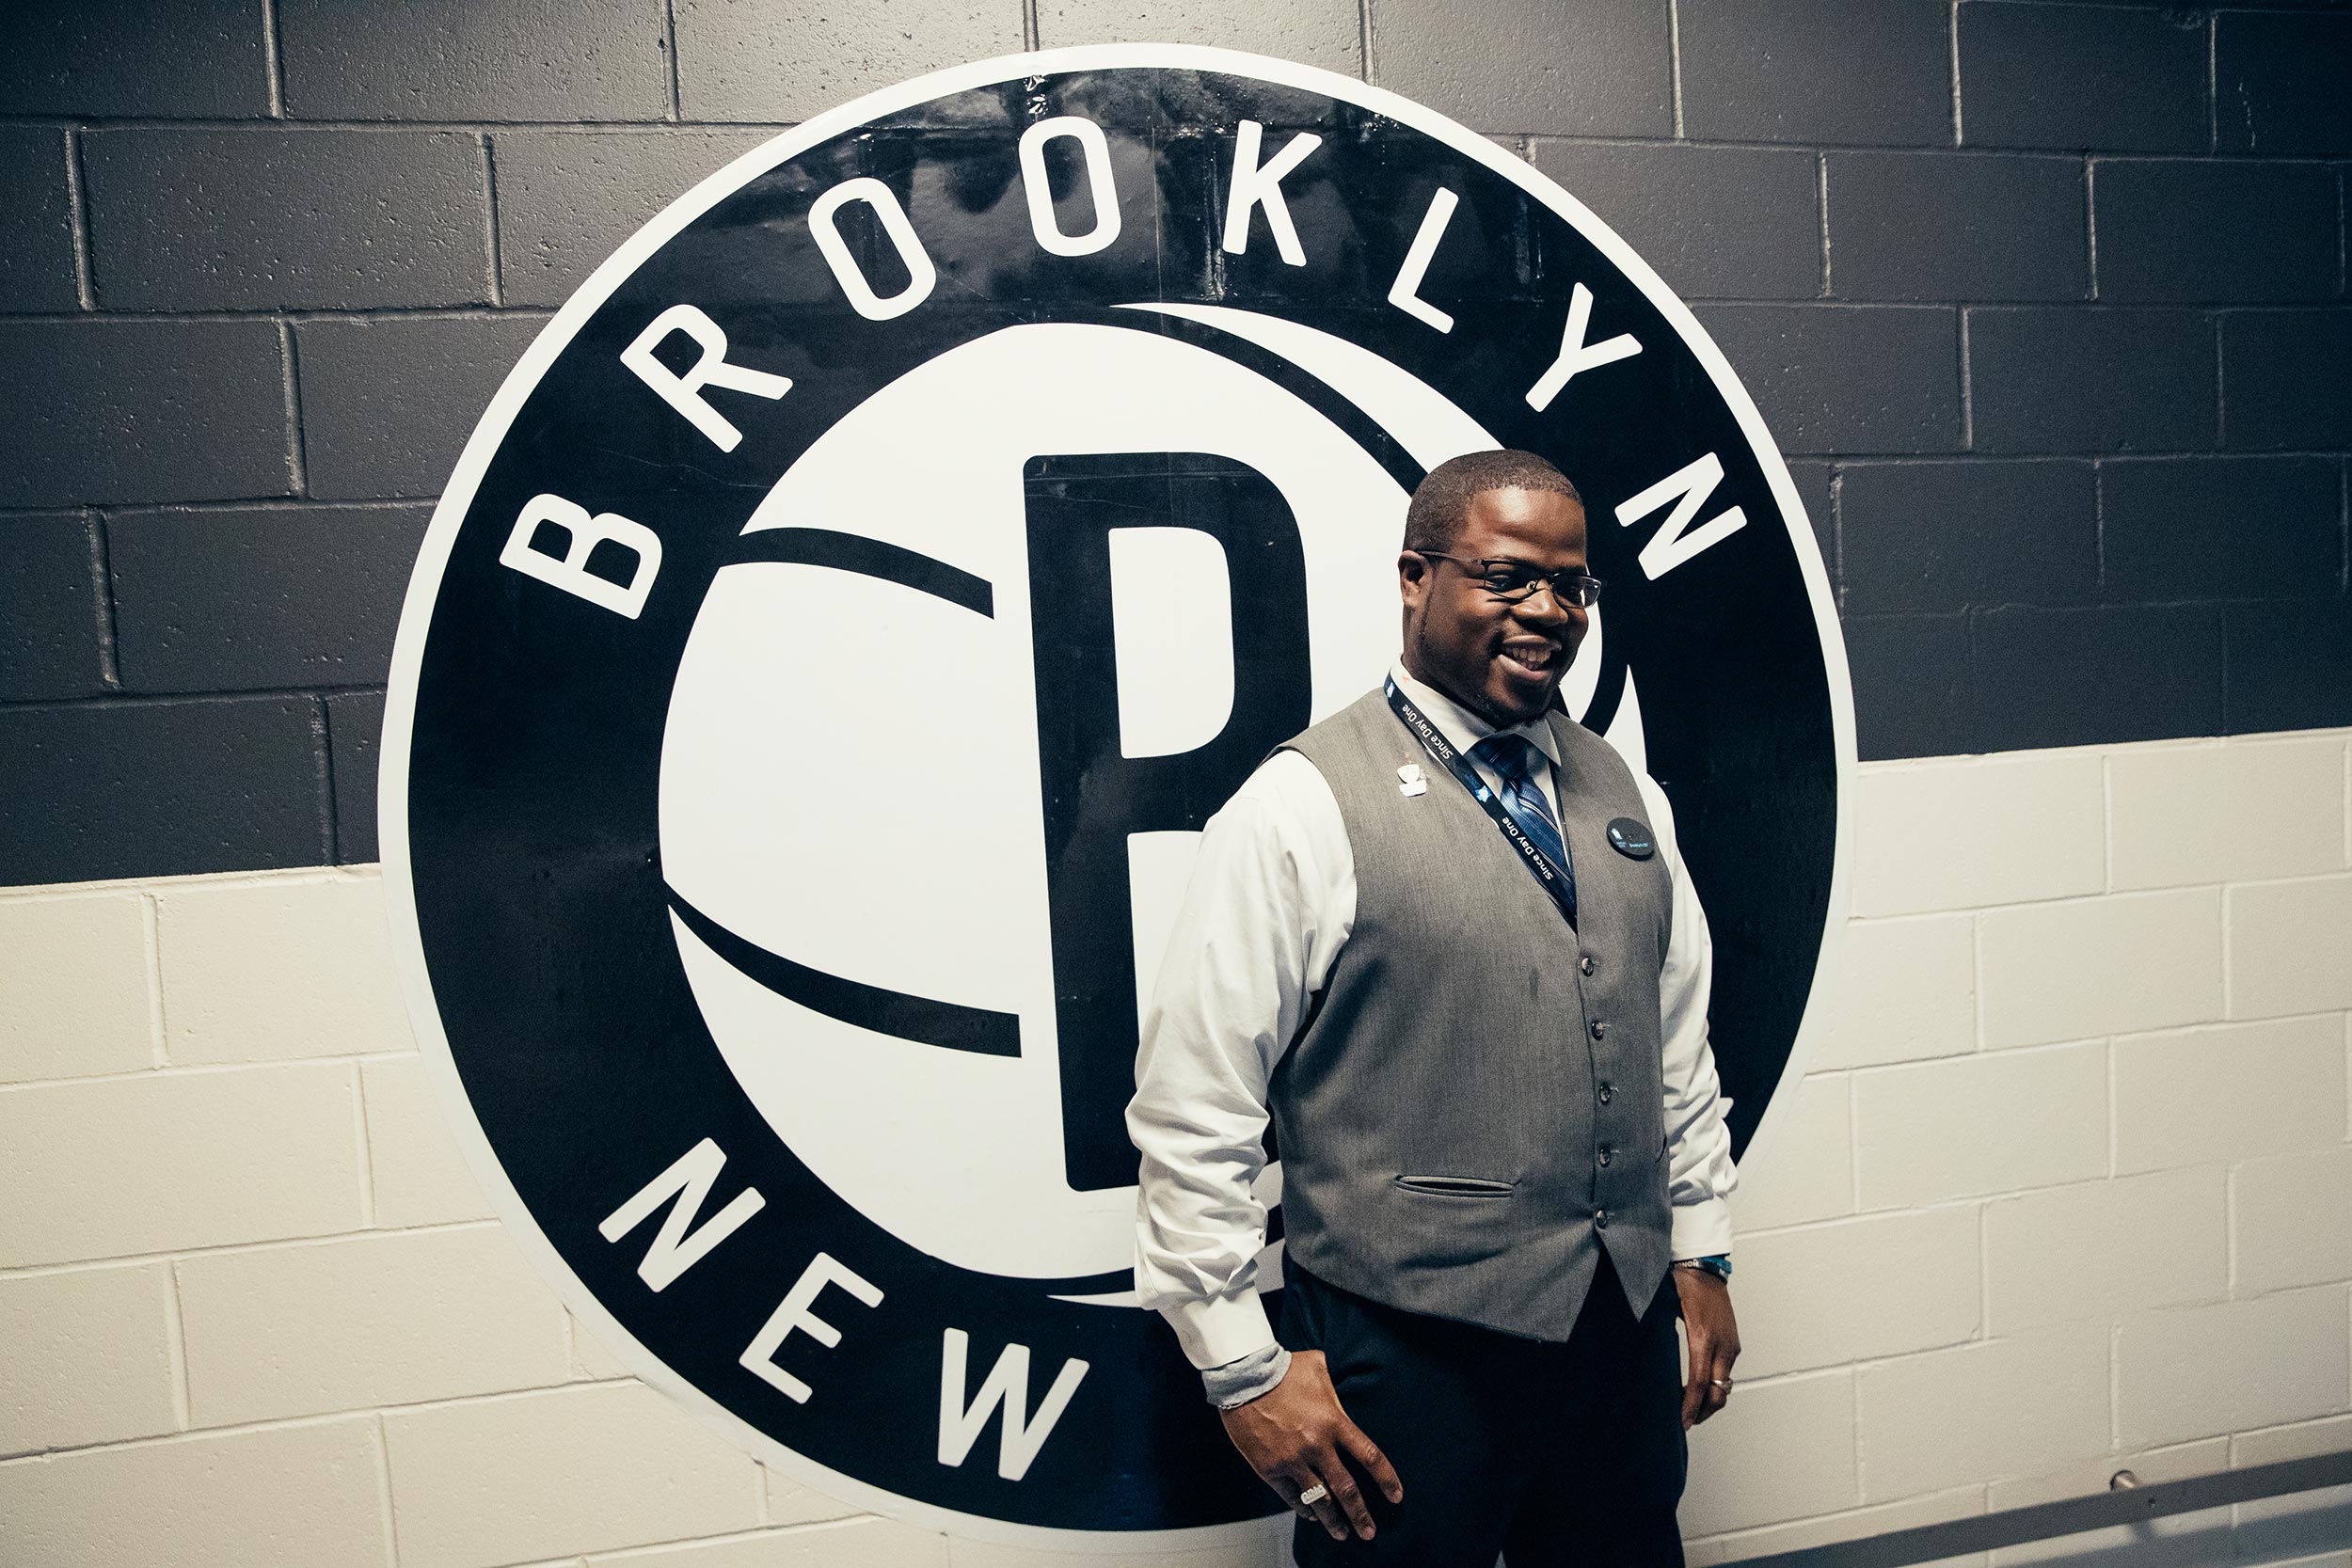 Brooklyn_NBA-34